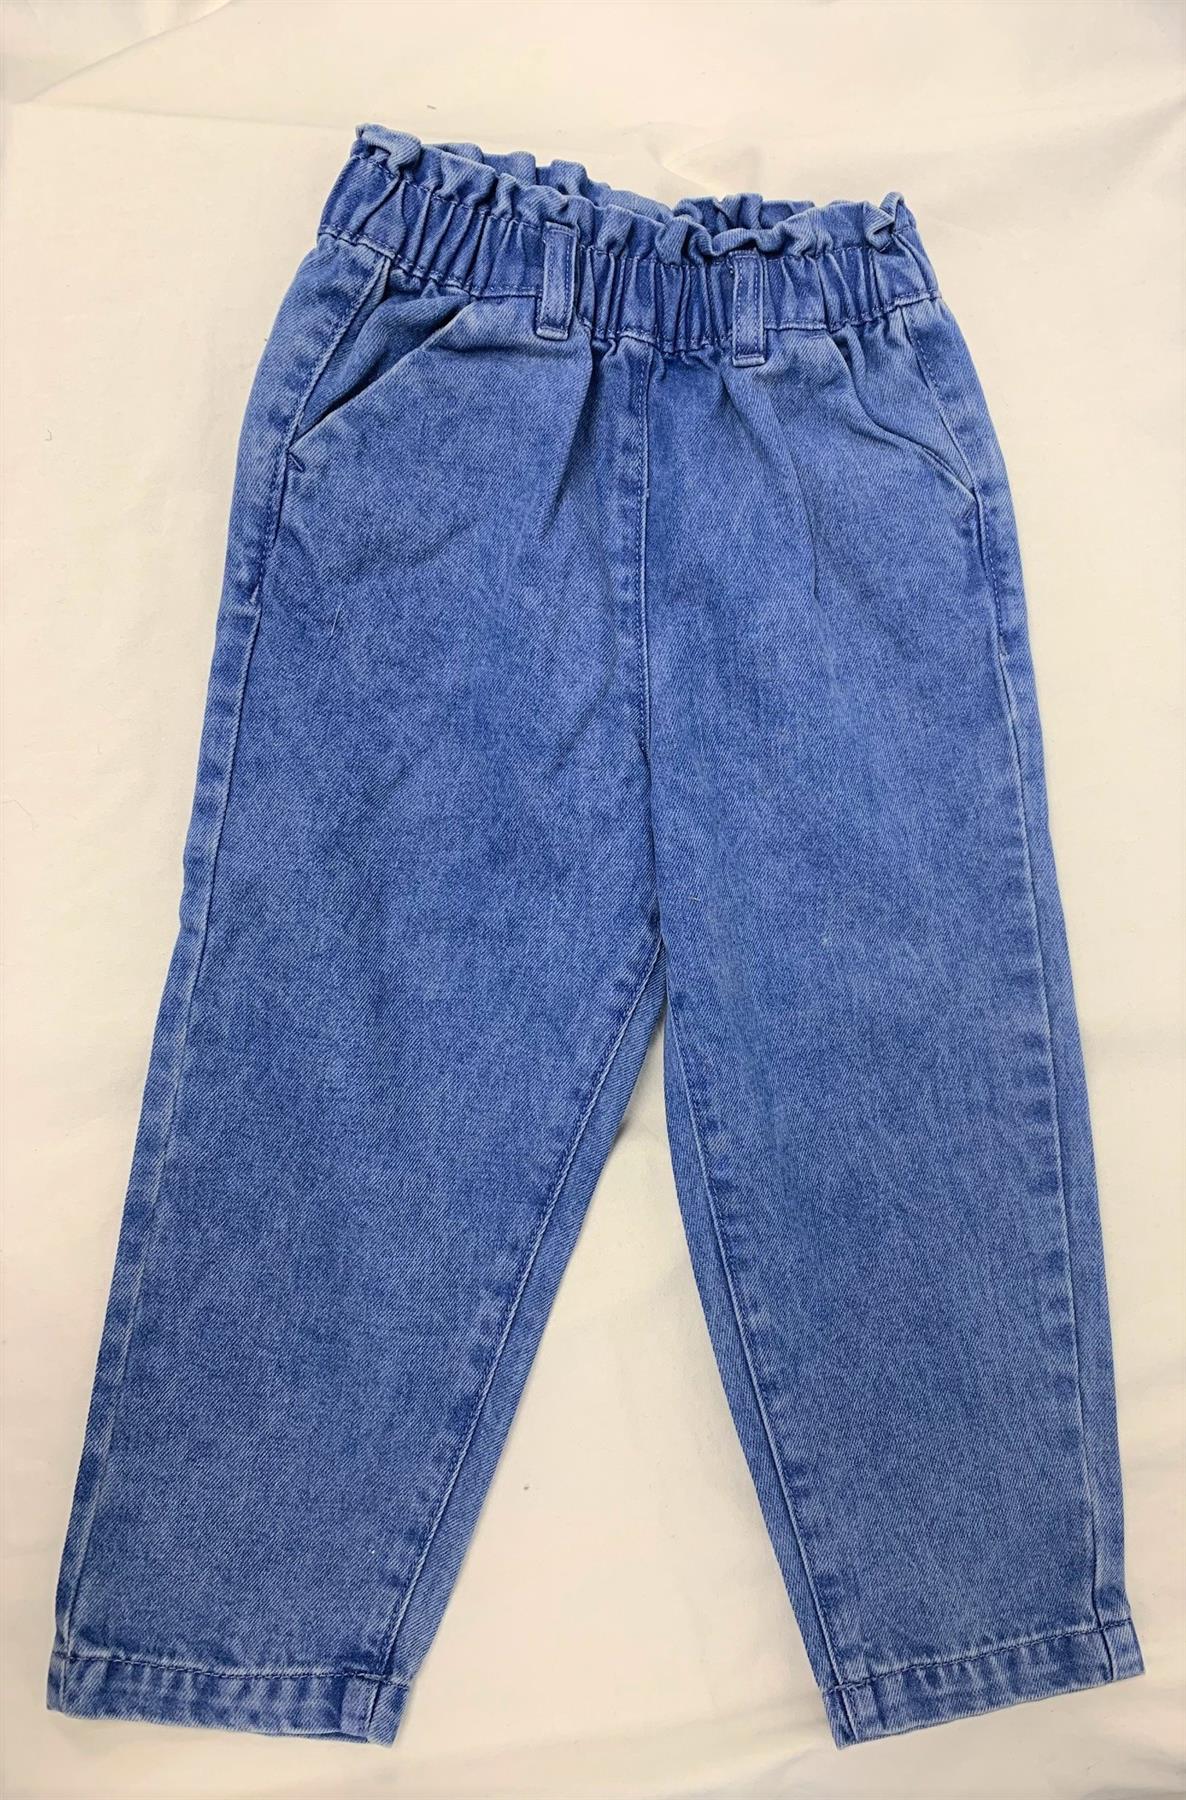 Buy Mens Casual Loose Fit Elastic Waist Jeans Denim Pants Online at  desertcartINDIA